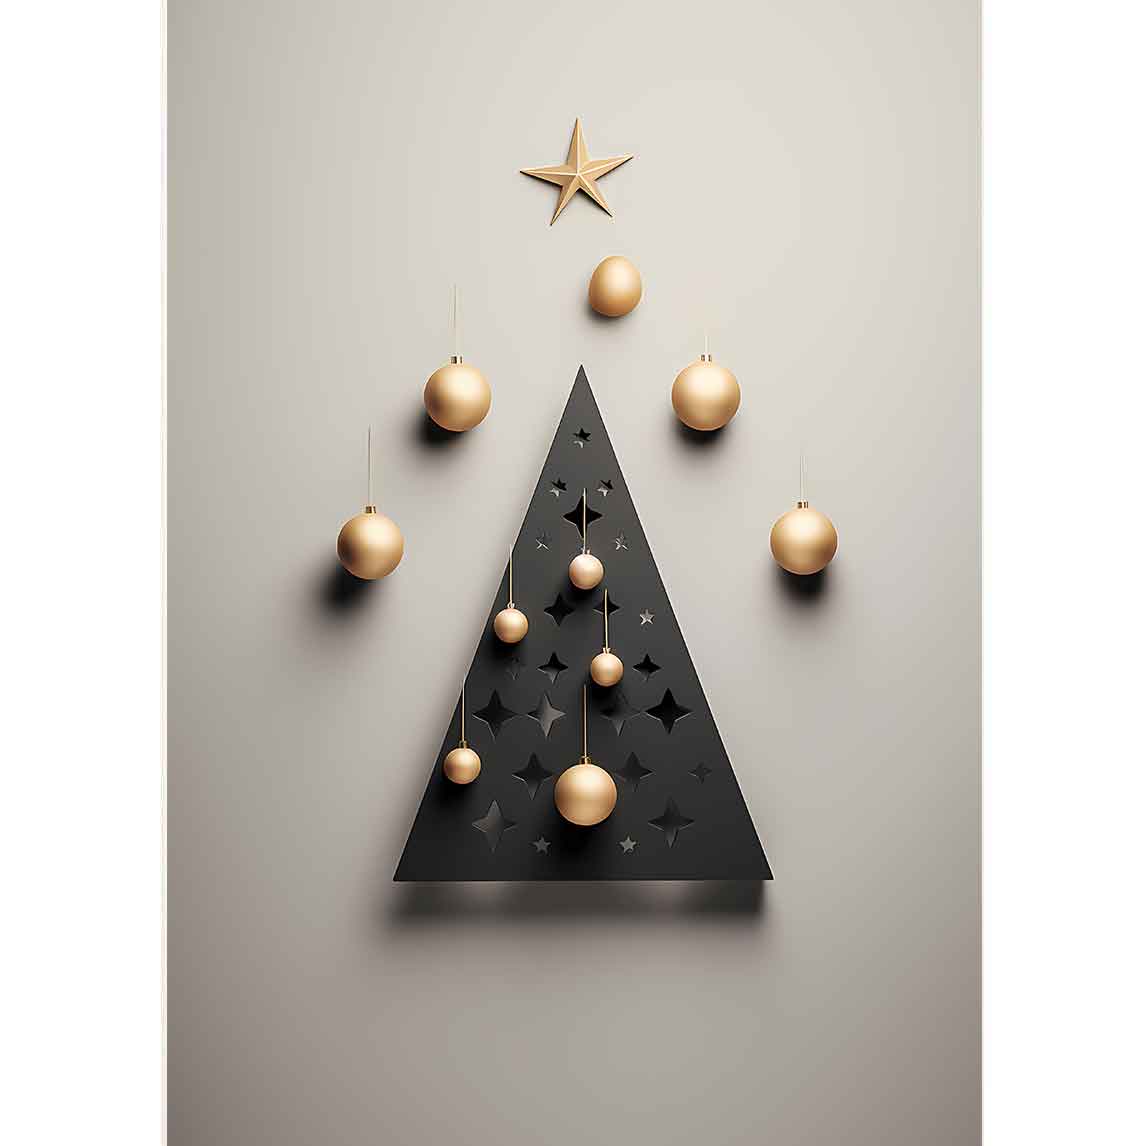 Der Baum aus Metall ist ein Weihnachtsbaum. Er hat goldene Kugeln.